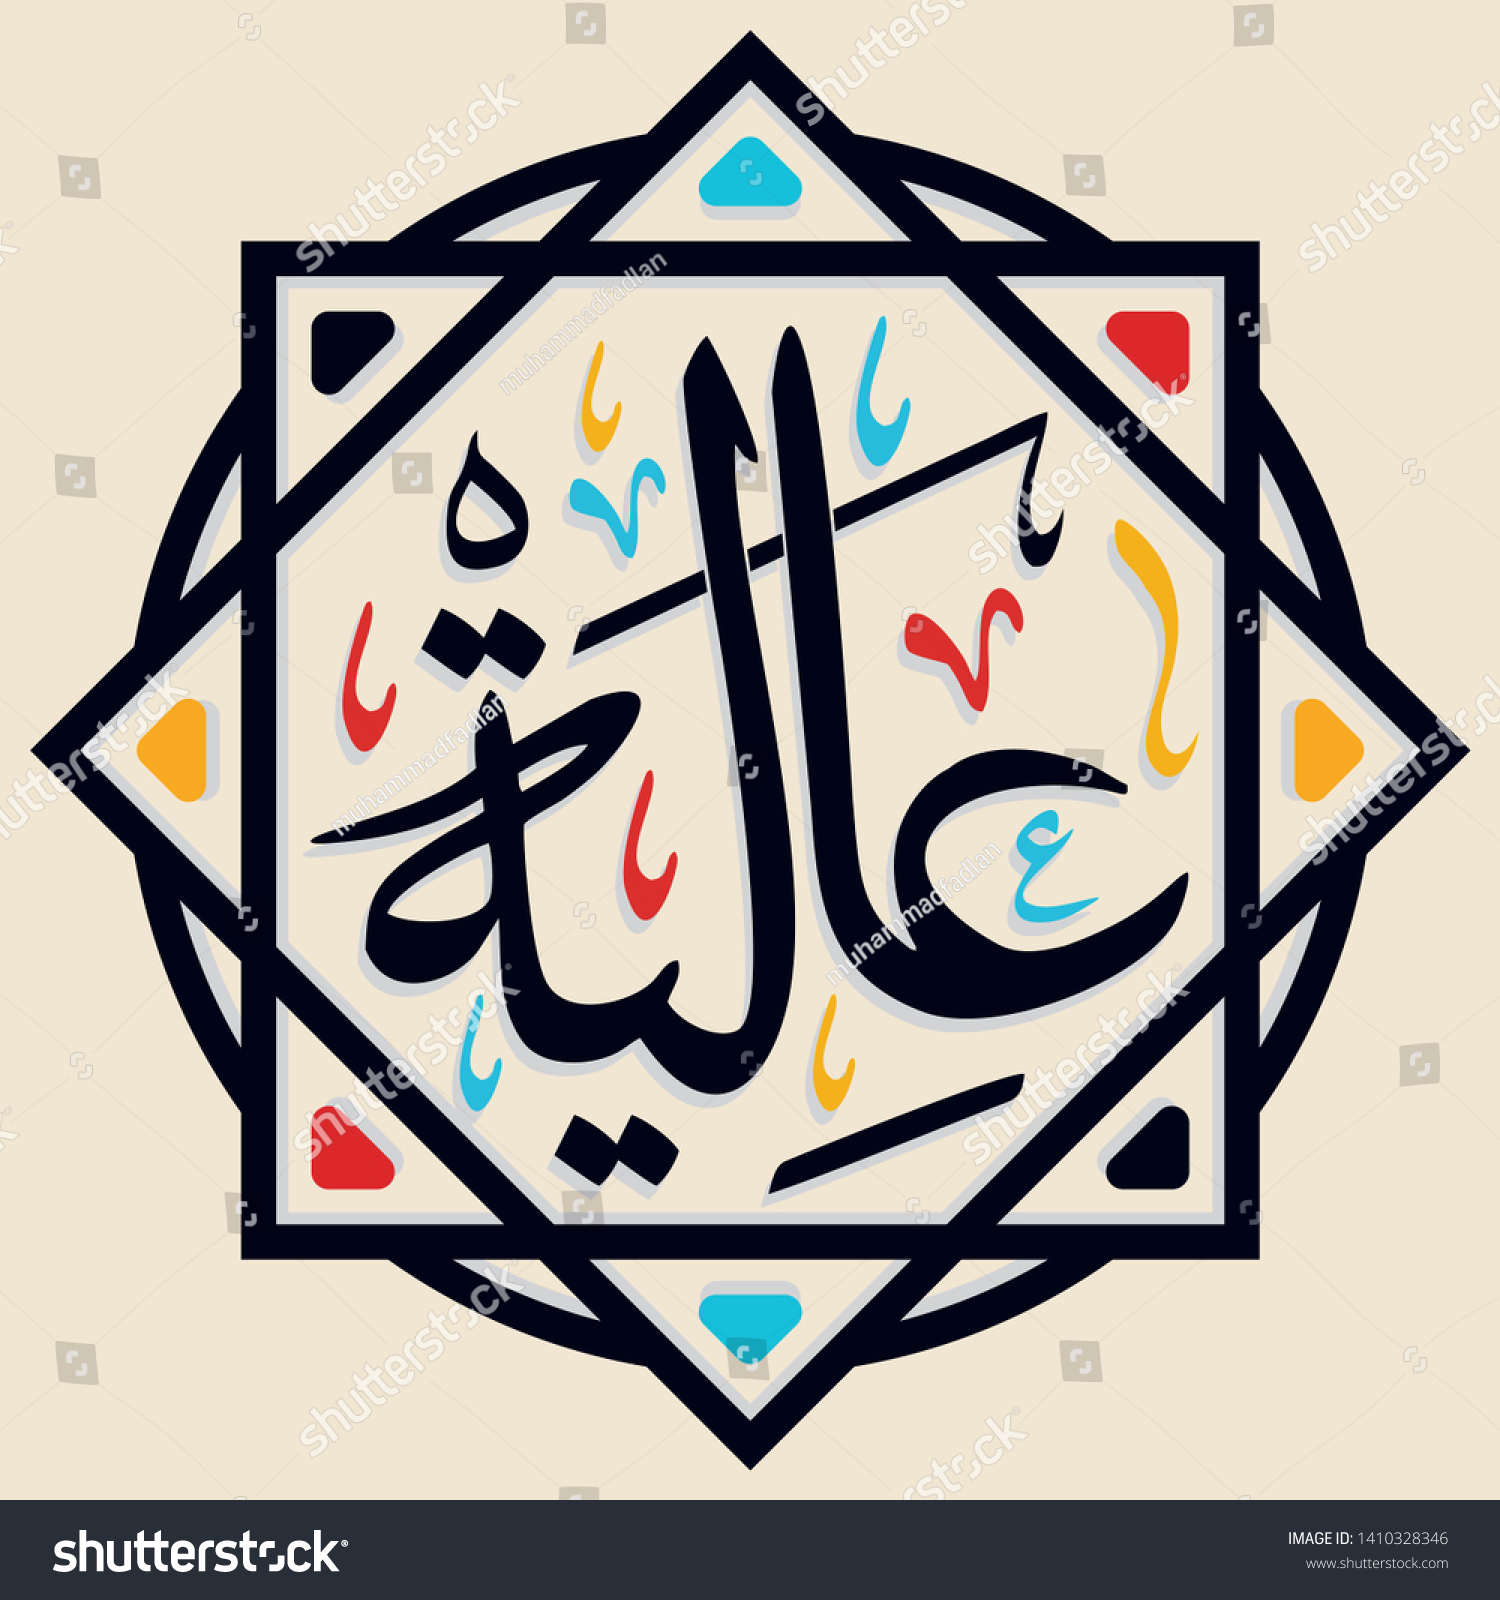 omar name in arabic